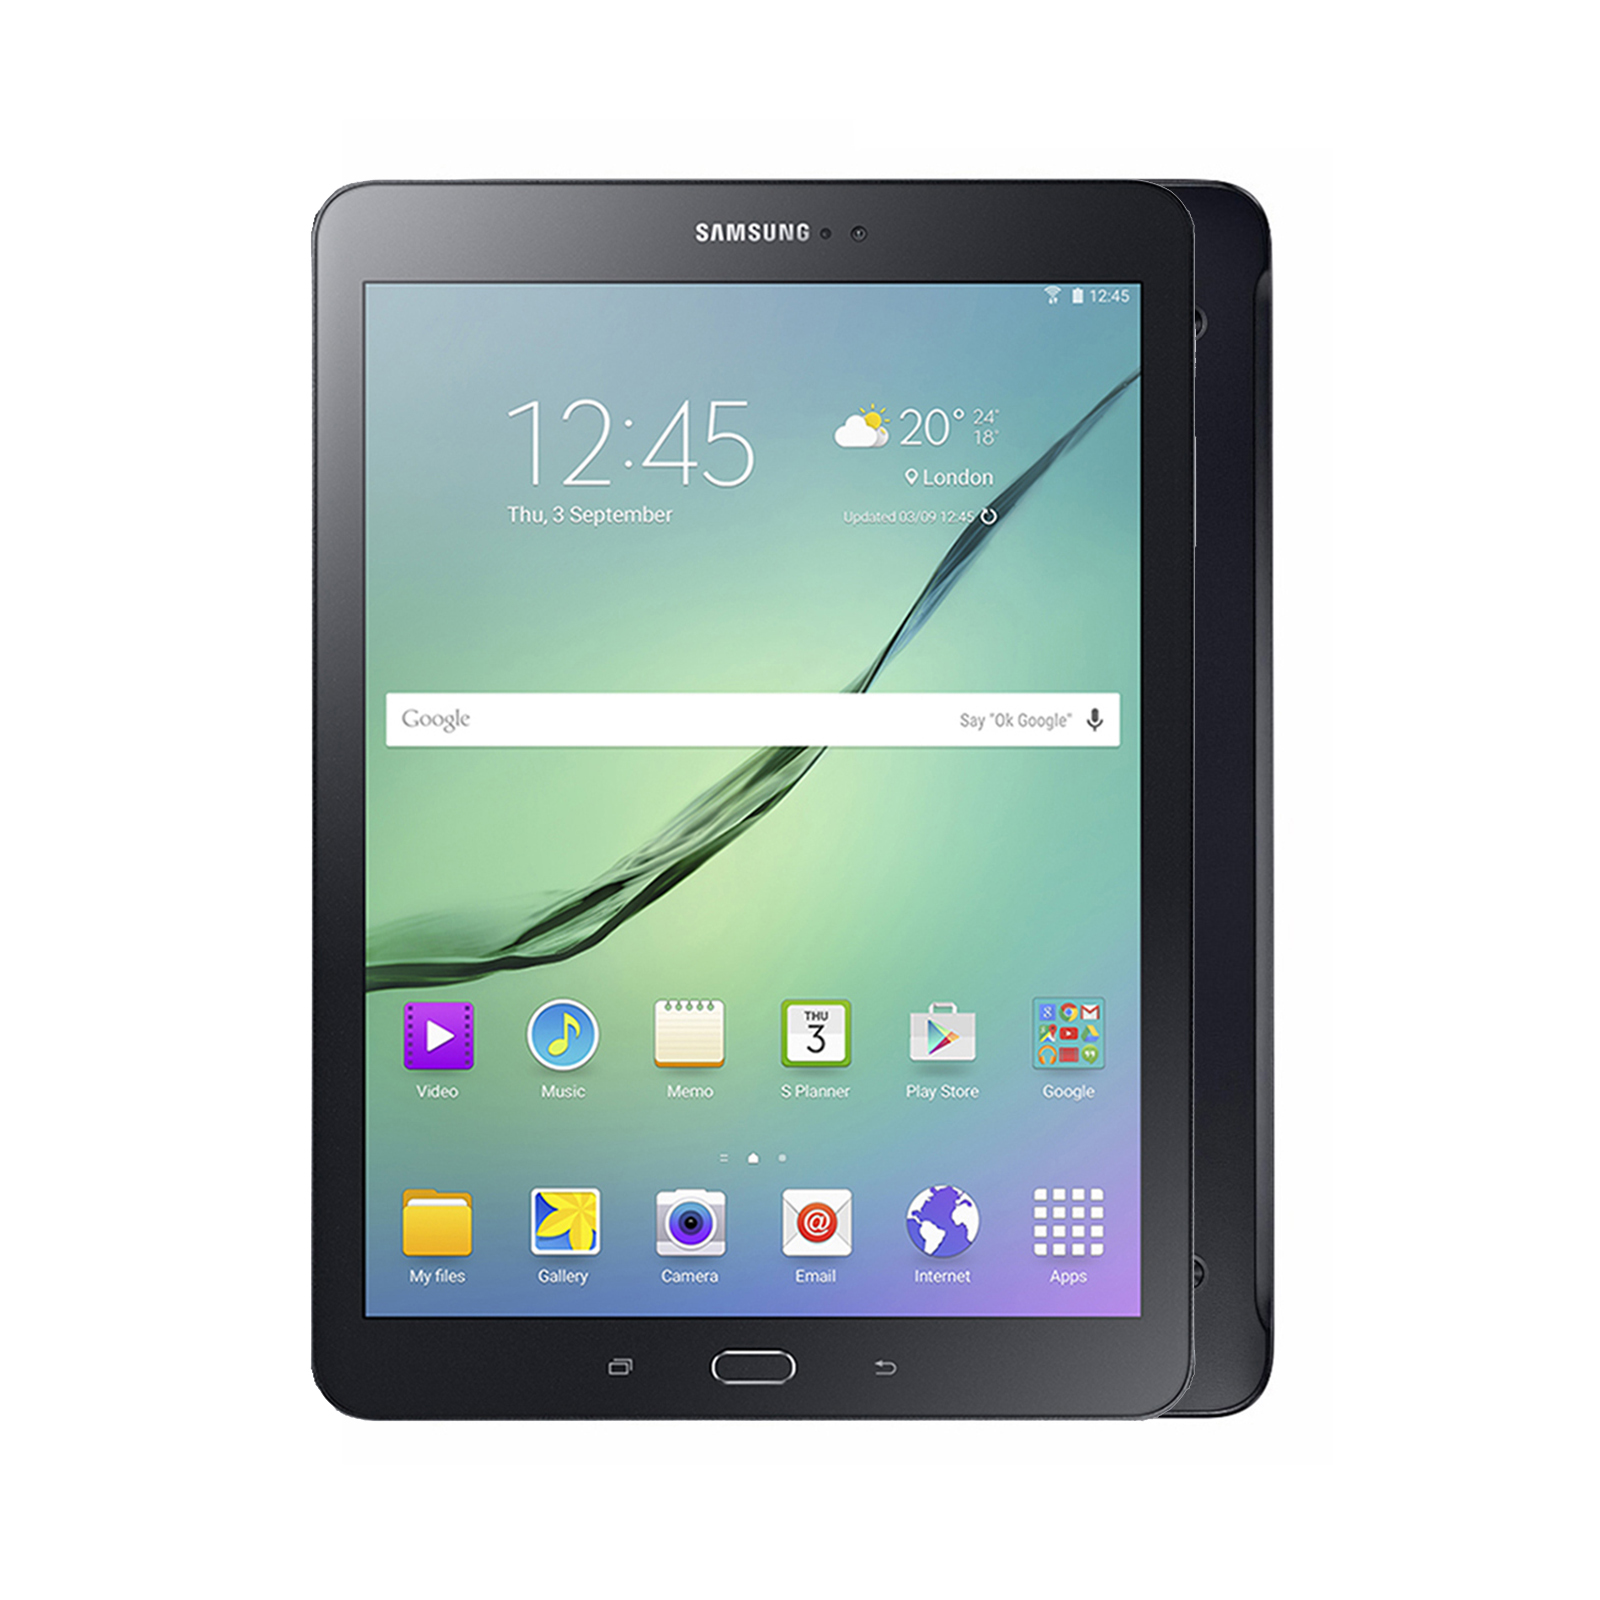 Samsung Galaxy Tab S2 [Wi-Fi + Cellular] [32GB] [Black] [Very Good] [12M]